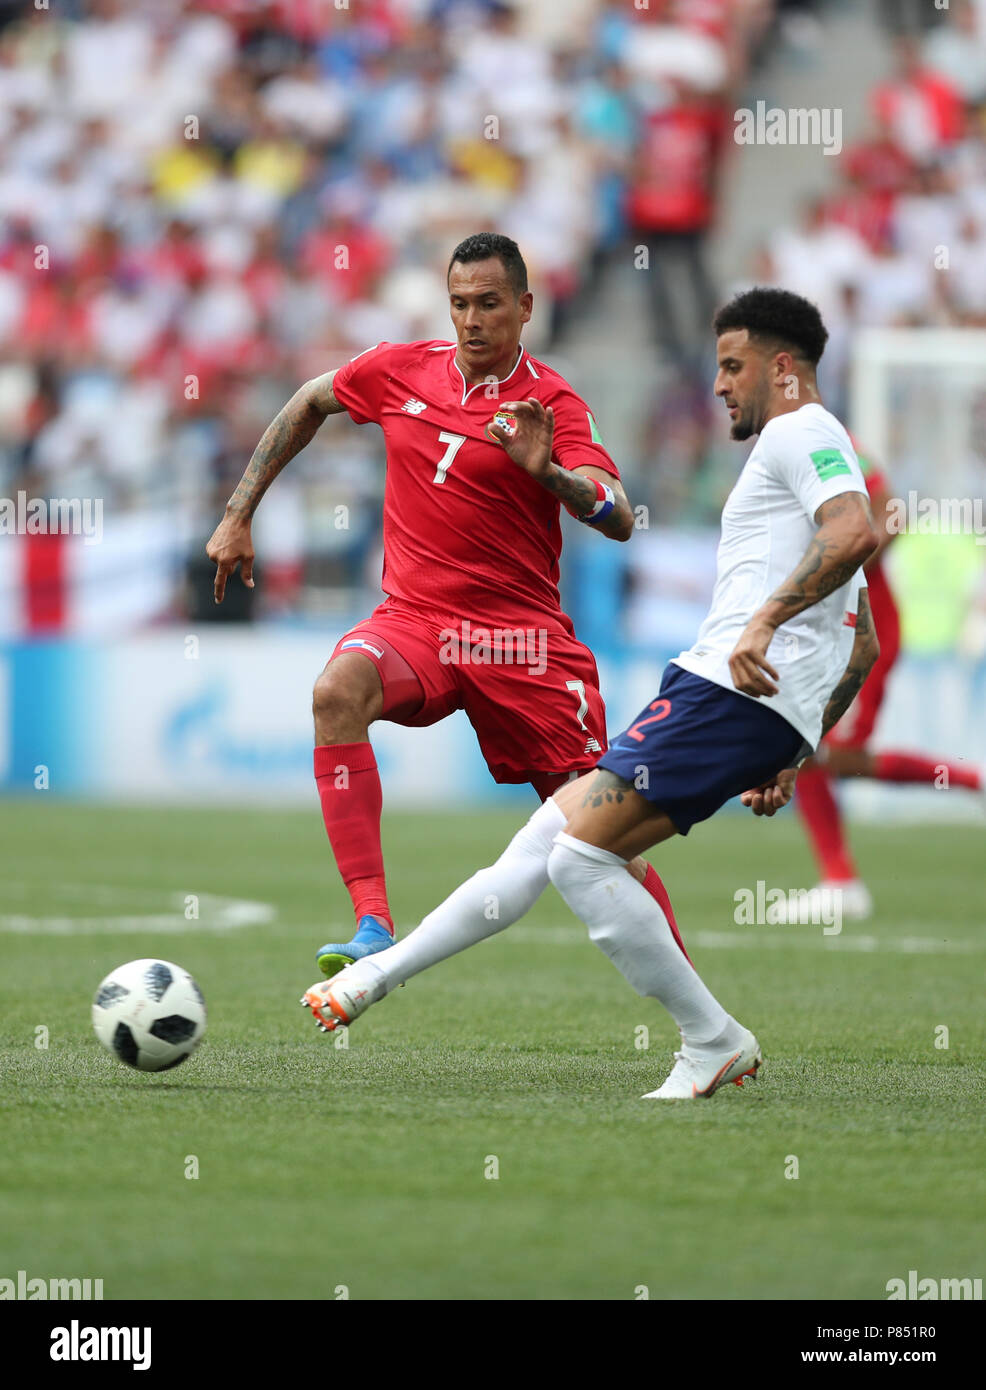 Blas Perez do Panama disputa a bola com jogador da Inglaterra realizada neste domingo, 24, no Estádio Nizhny Novgorod, na Rússia, válida pela 2ª rodada do Grupo G da Copa do Mundo 2018. Stock Photo